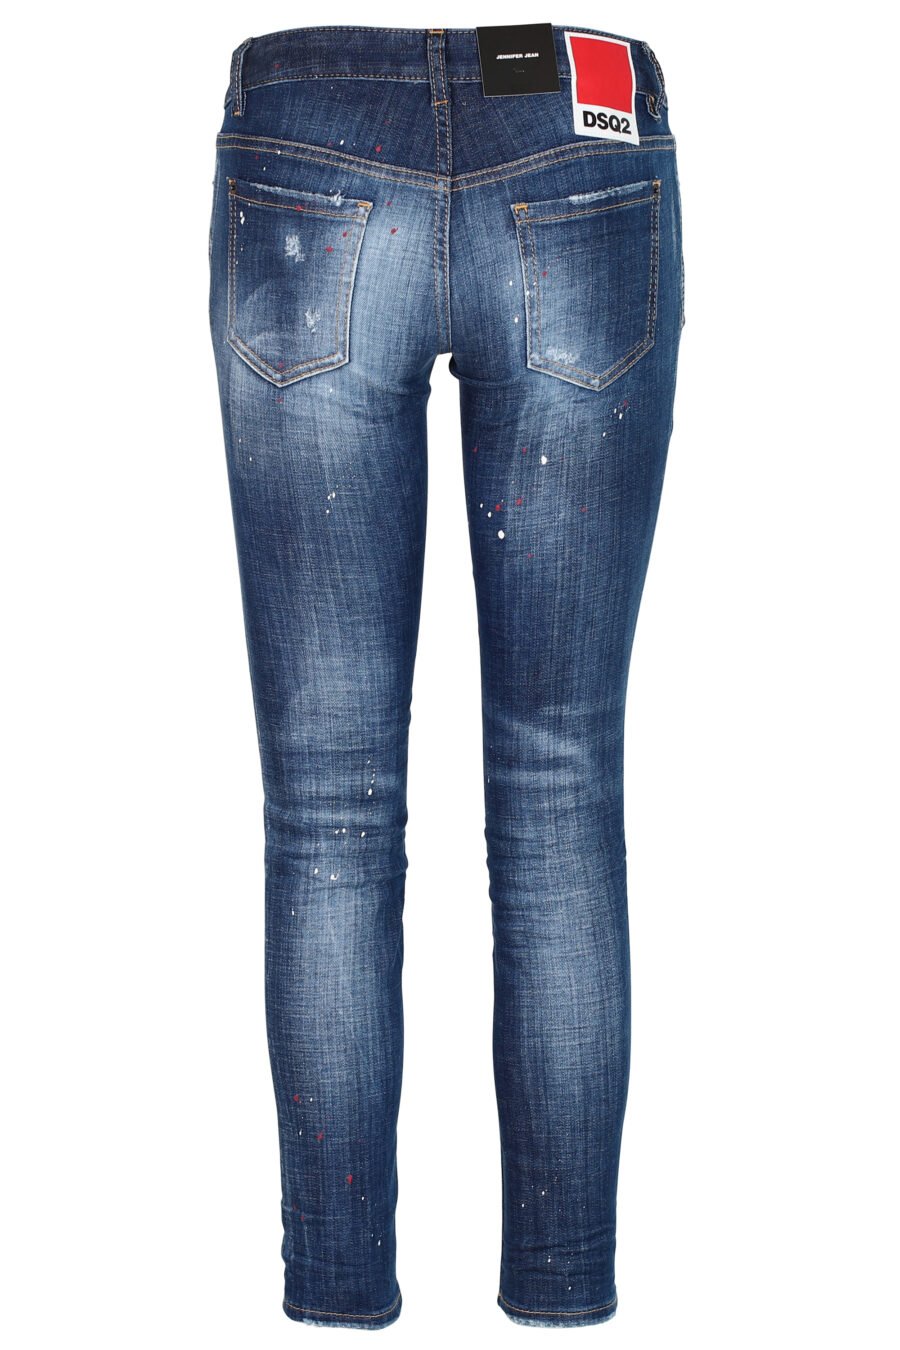 Jeans "Jennifer Jean" bleu avec éclaboussures de peinture et effet usé - 8052134937259 3